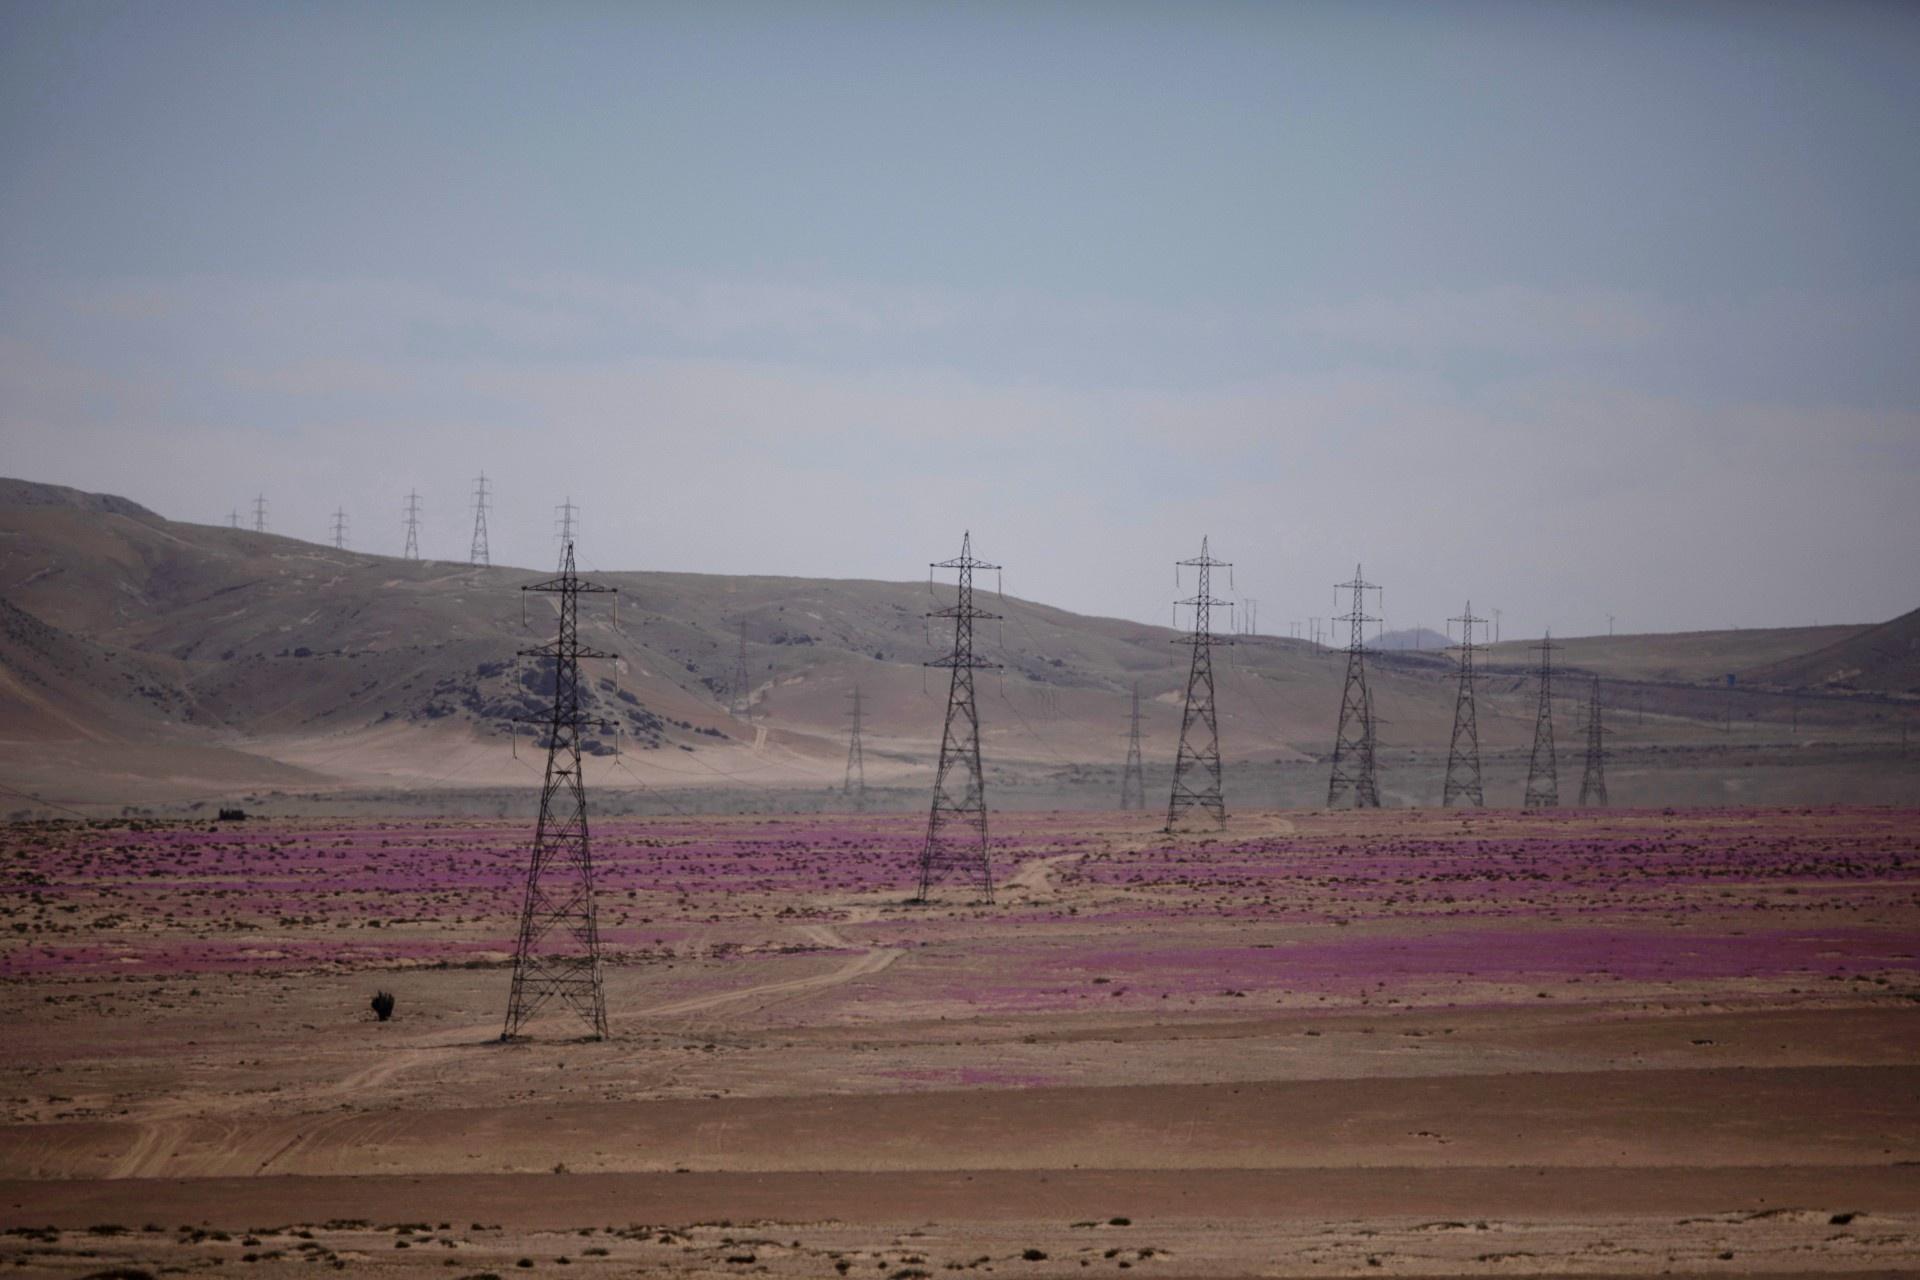 Kì diệu thảm hoa nở rực rỡ trên sa mạc khô cằn nhất thế giới - 9